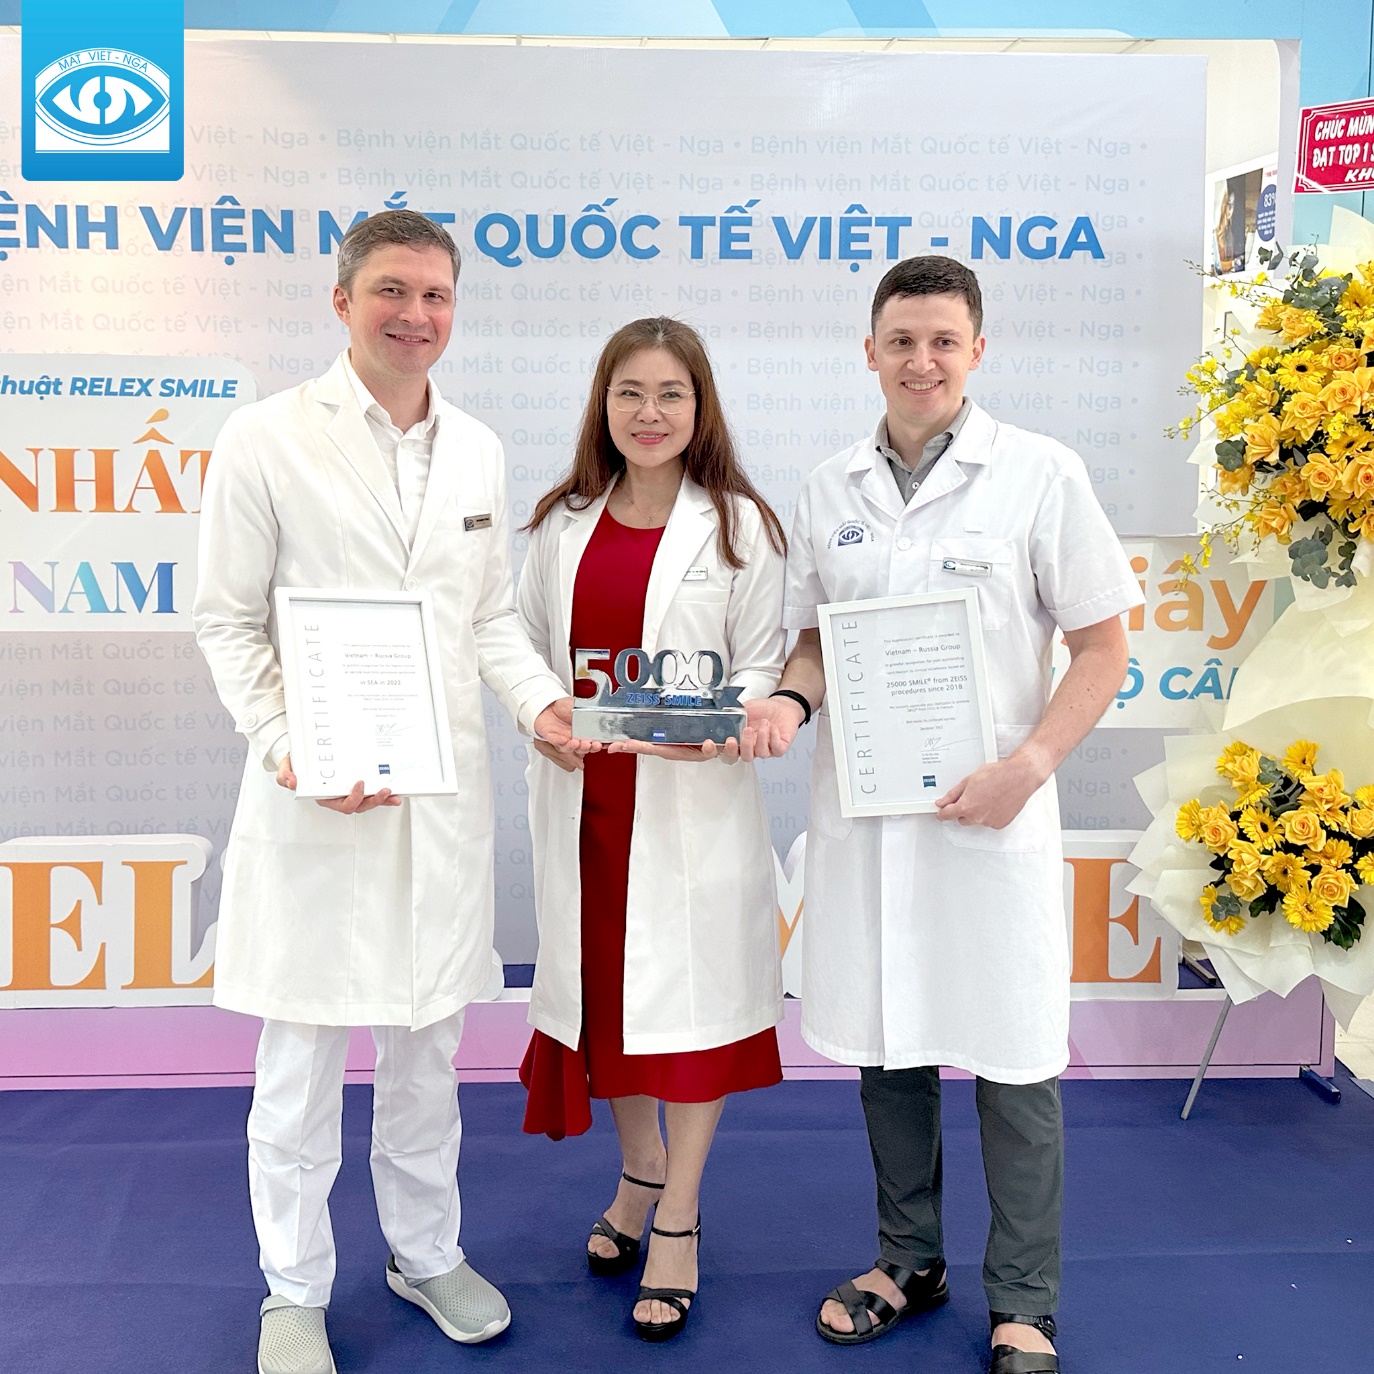 Bệnh Viện Mắt Quốc Tế Việt - Nga vinh dự nhận 4 giải thưởng thành tựu phẫu thuật khúc xạ của khu vực Đông Nam Á - Ảnh 1.